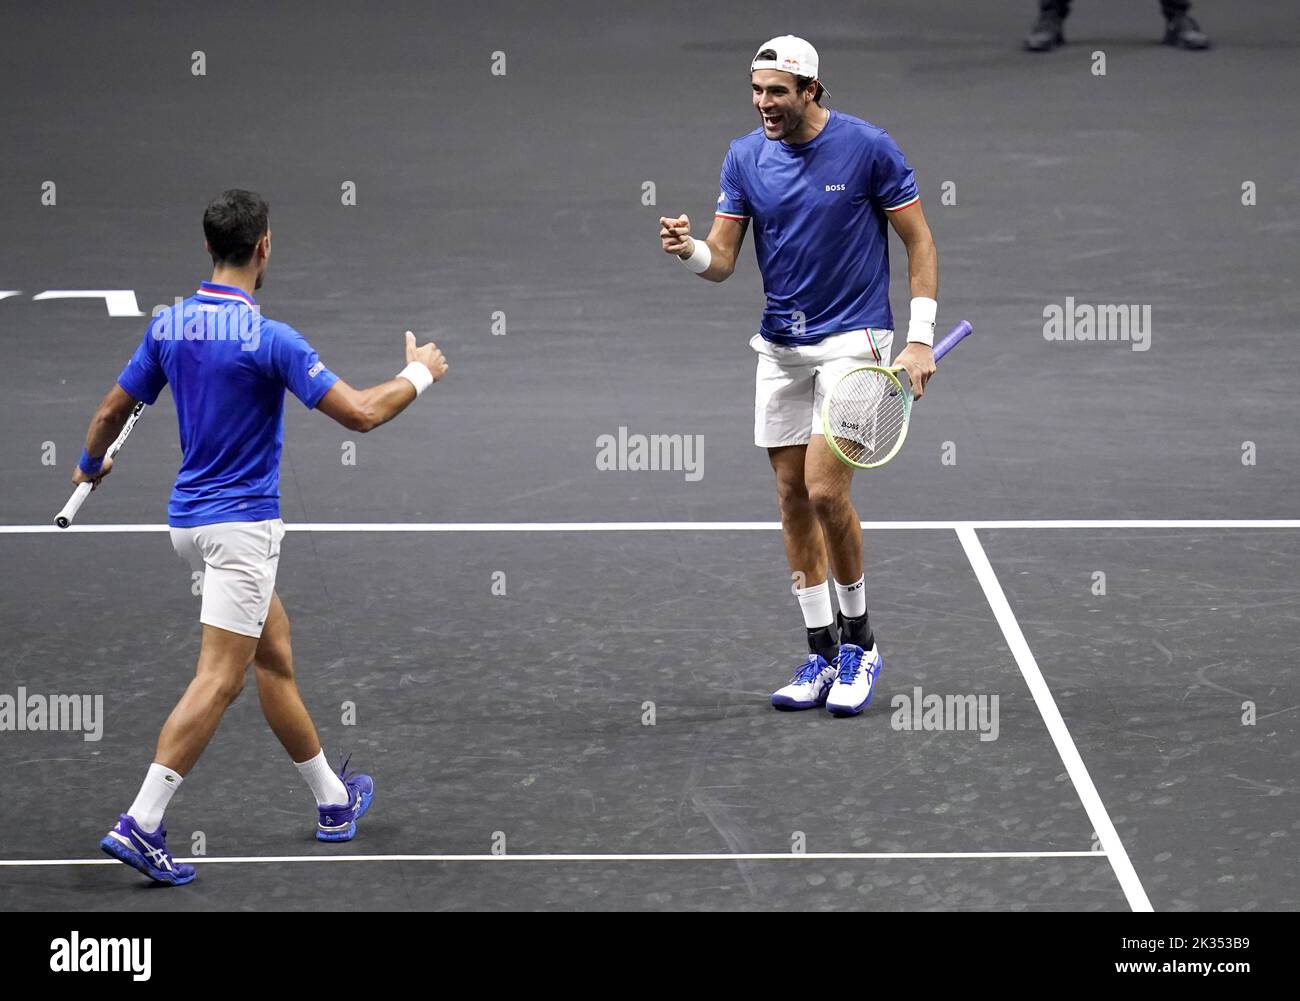 Matteo Berrettini celebra con Novak Djokovic, (izquierda) después de derrotar a Alex De Minaur y Jack Sock en su partido de dobles el segundo día de la Copa Laver en el O2 Arena, Londres. Fecha de la foto: Sábado 24 de septiembre de 2022. Foto de stock